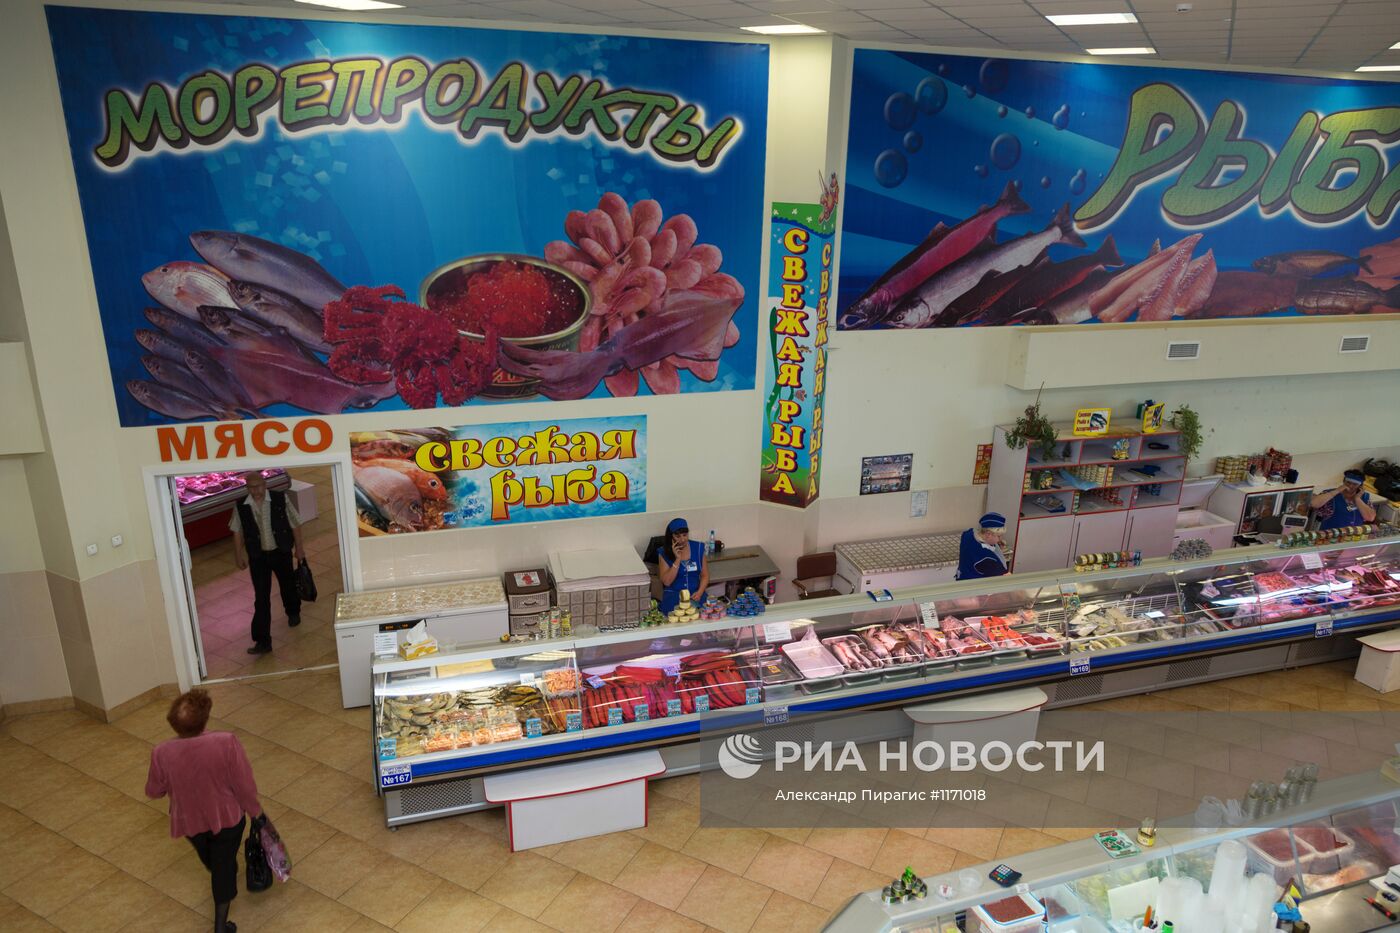 Продажа морепродуктов на рынке ОАО ОБ "Камчатпромтовары"